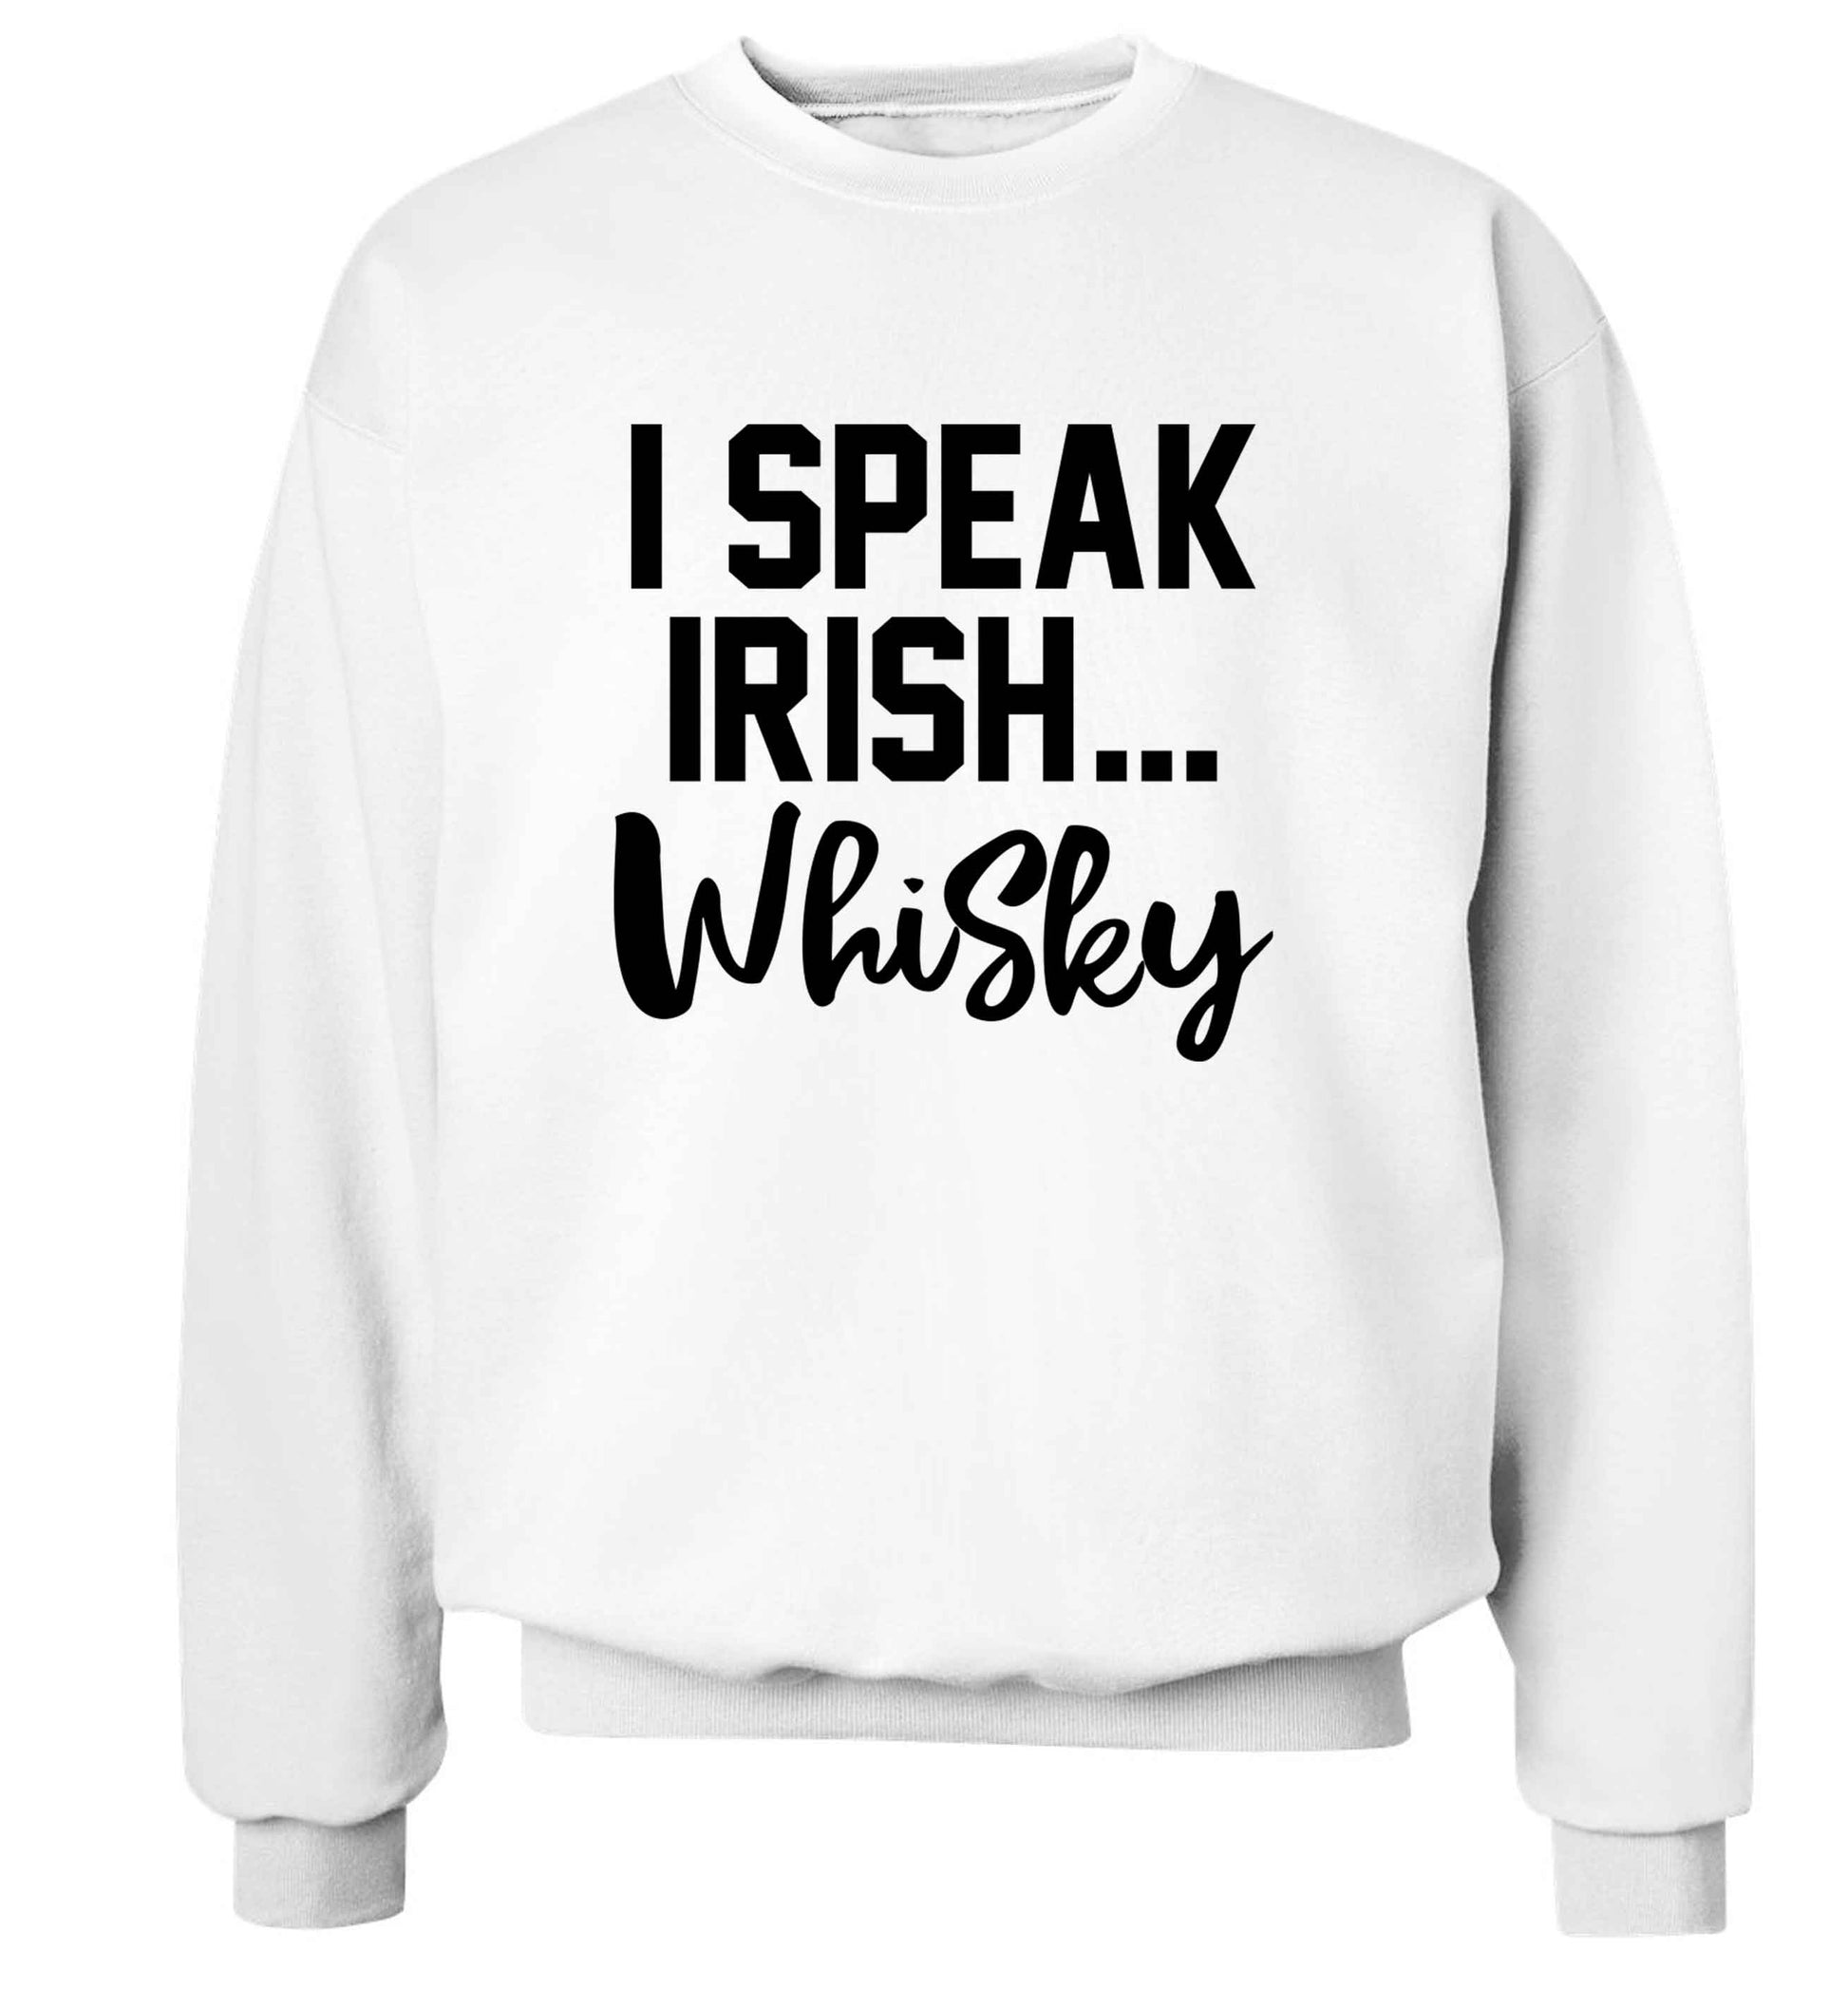 I speak Irish whisky adult's unisex white sweater 2XL